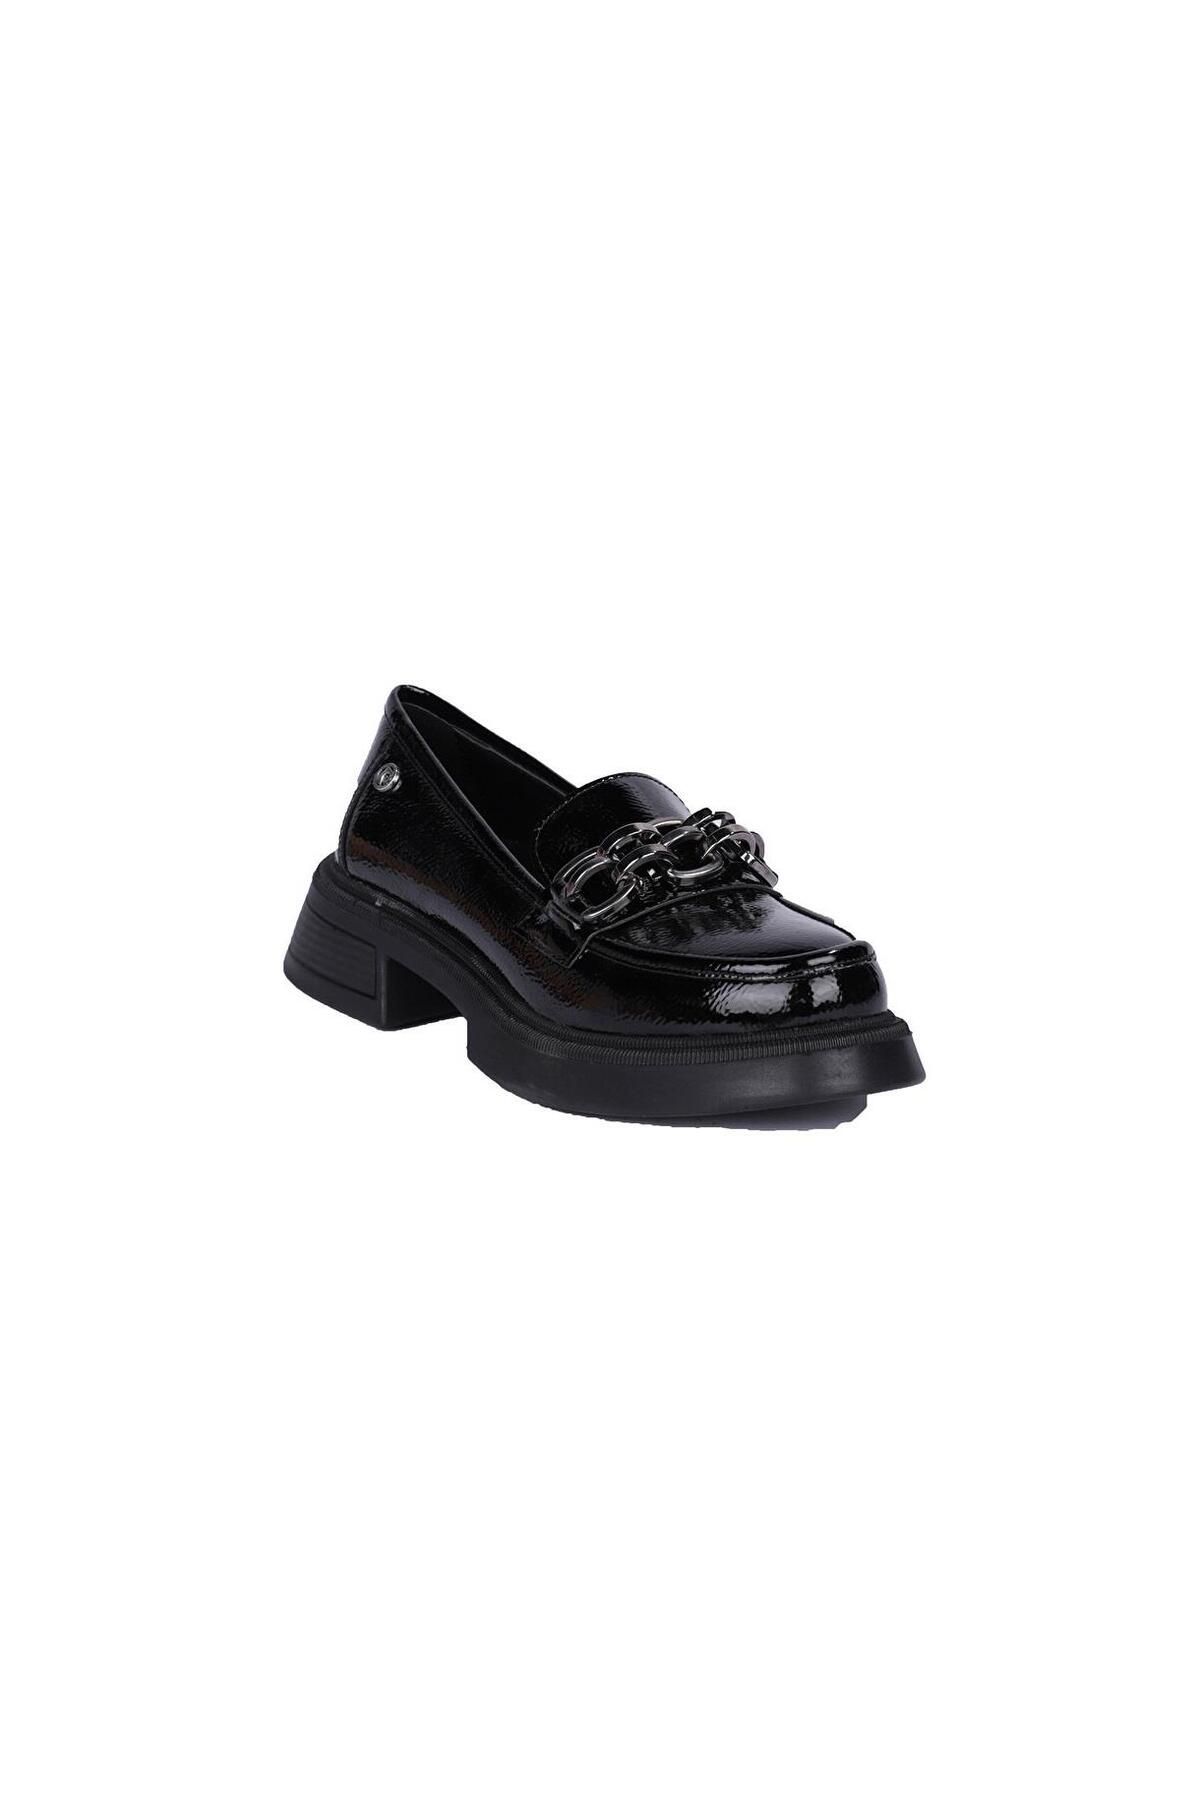 Pierre Cardin PC-52651 Siyah Rugan Kadın Günlük Ayakkabı